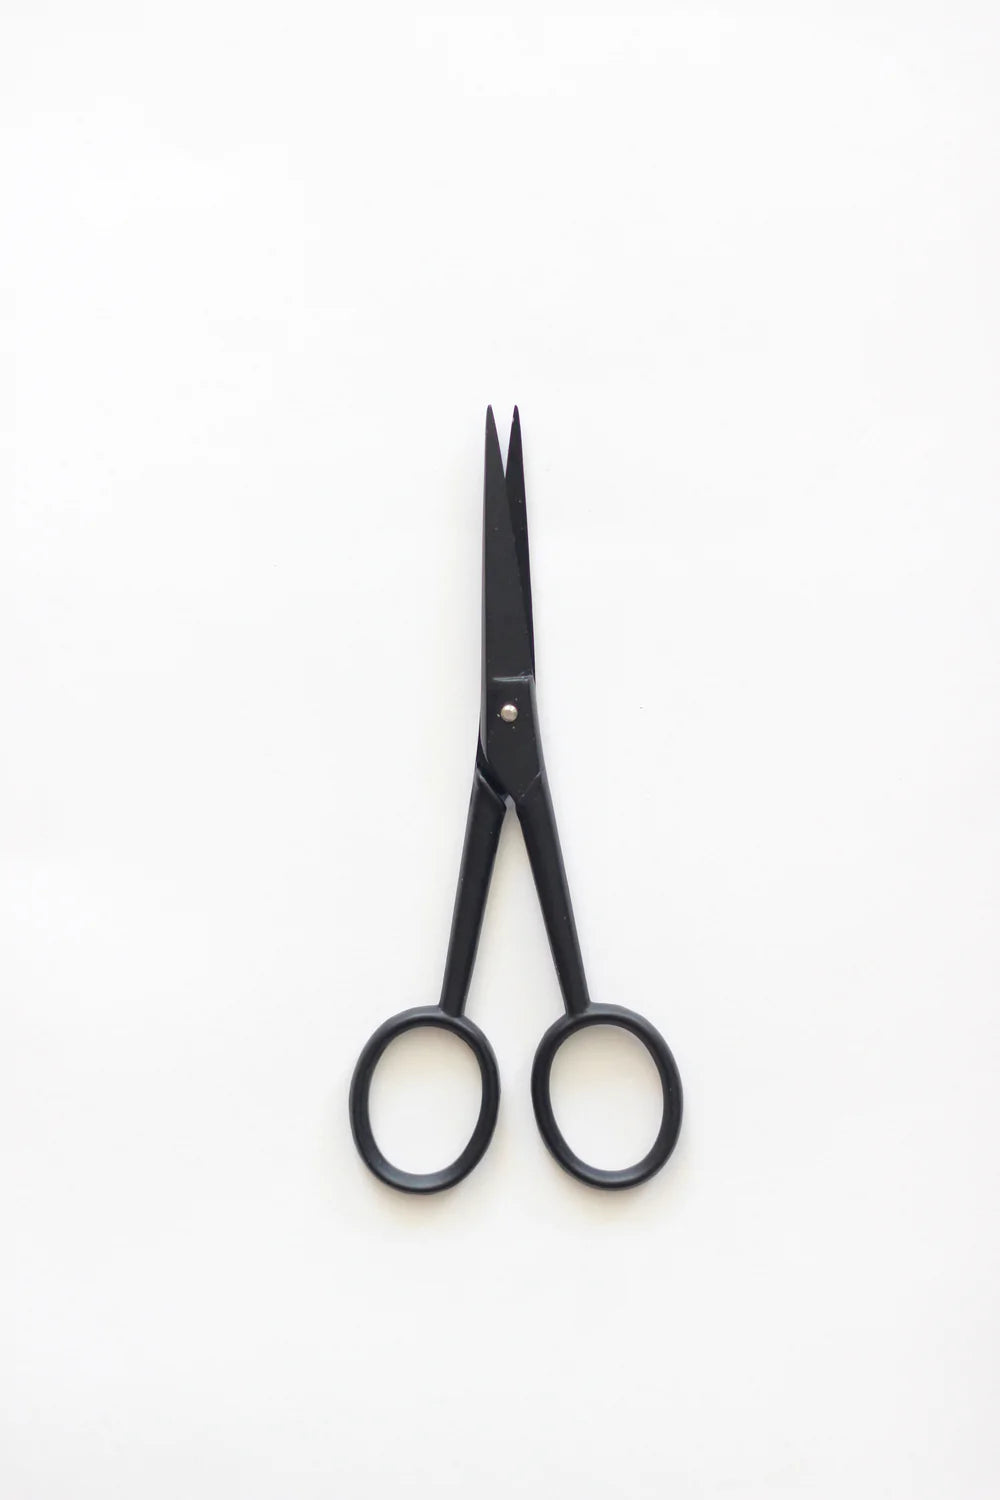 Studio Carta - Scissors - Silhouette - Large - Black